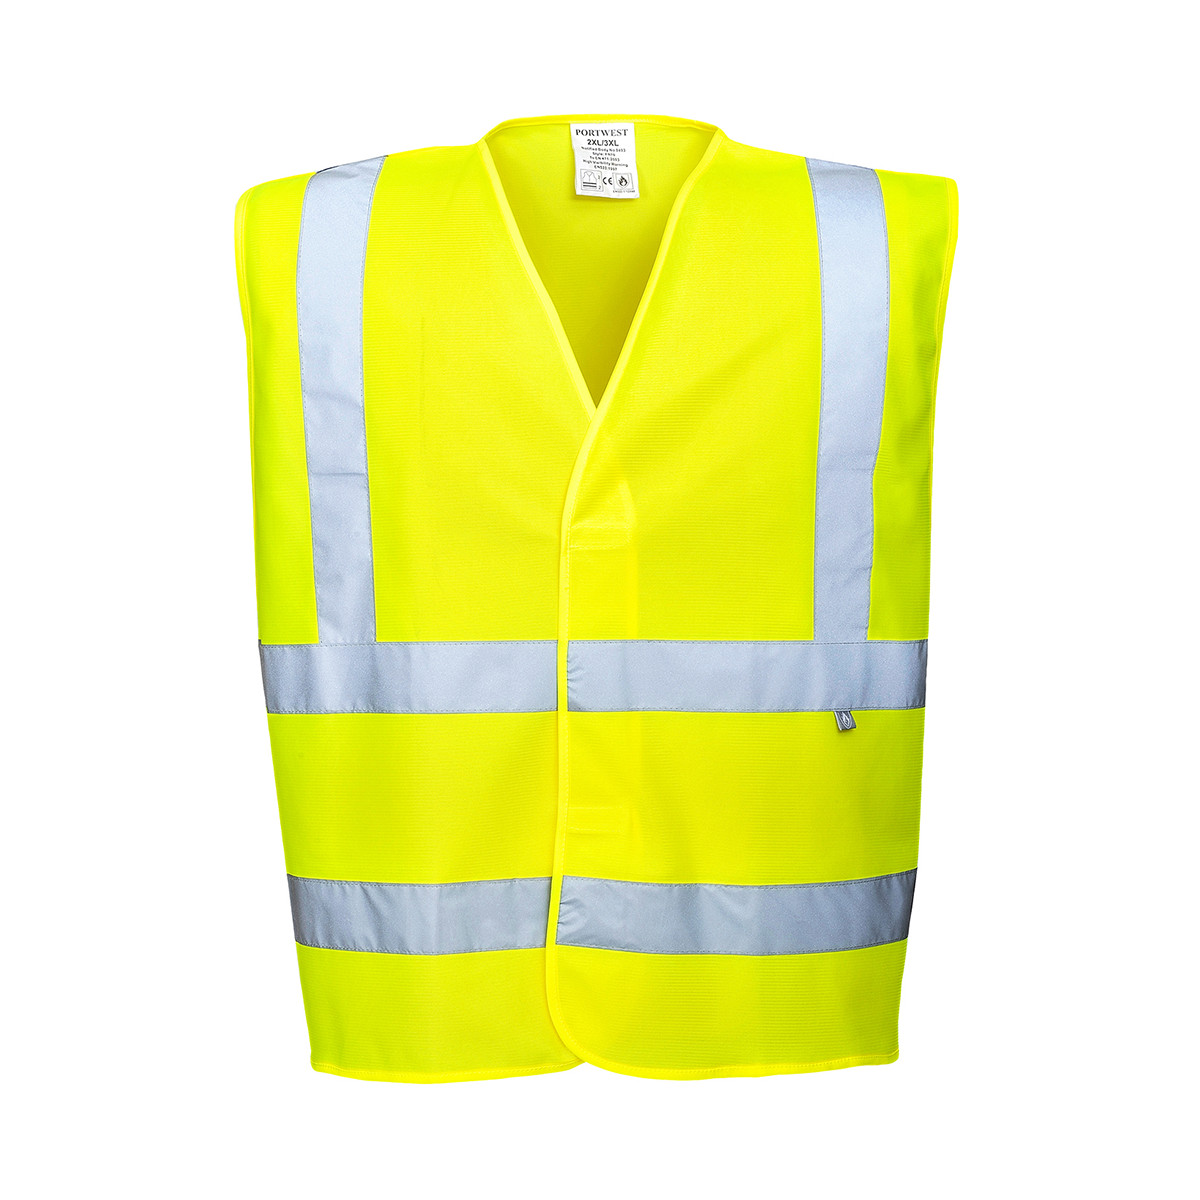 trudnopalna-odziez - Kamizelka ostrzegawcza z wykończeniem trudnopalnym kamizelka odblaskowa żółta odblaskowe pasy FR70 Portwest